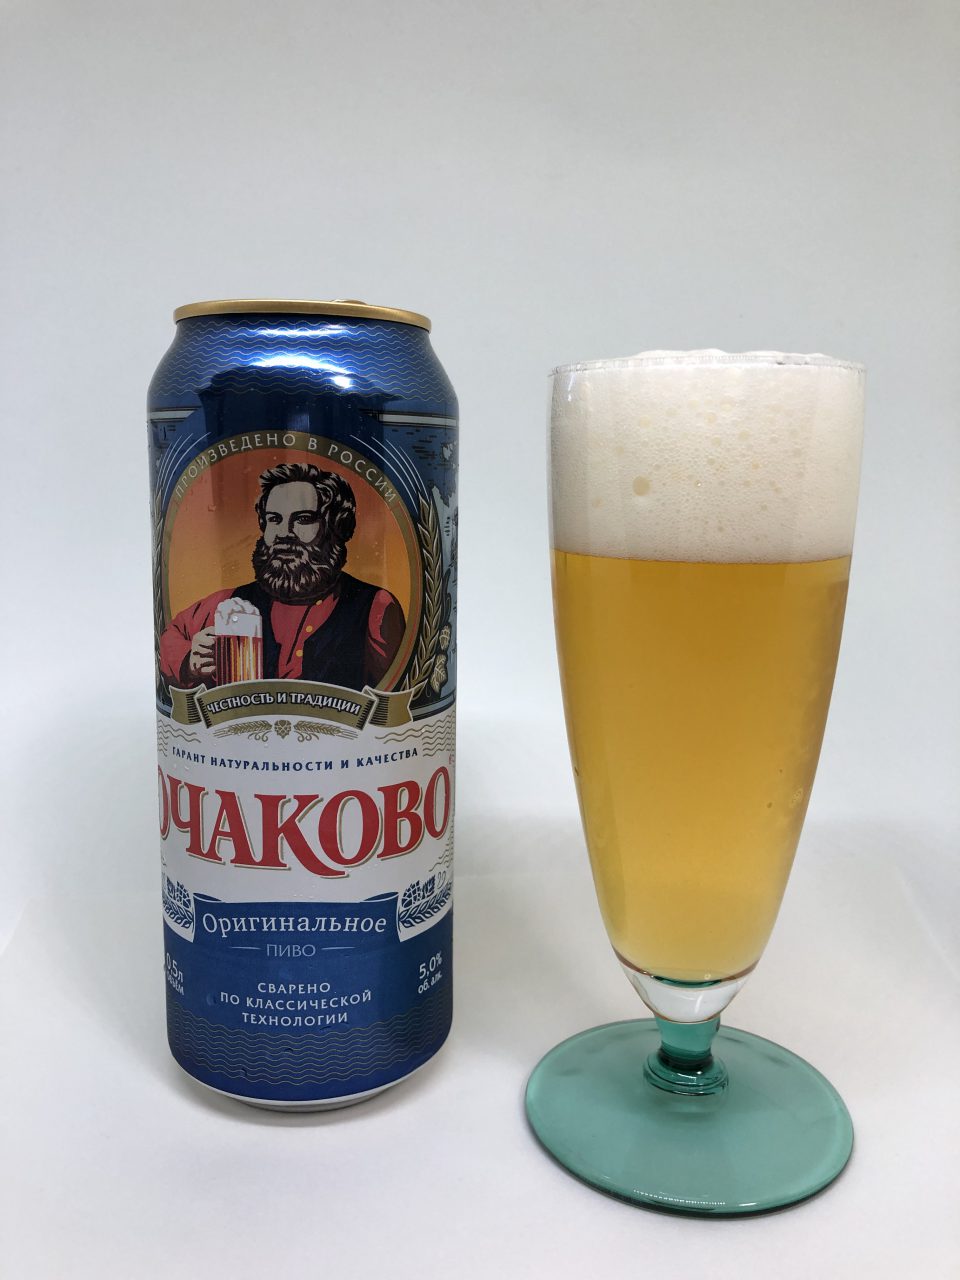 オチャコボ オリジナル クラフトビール大好き